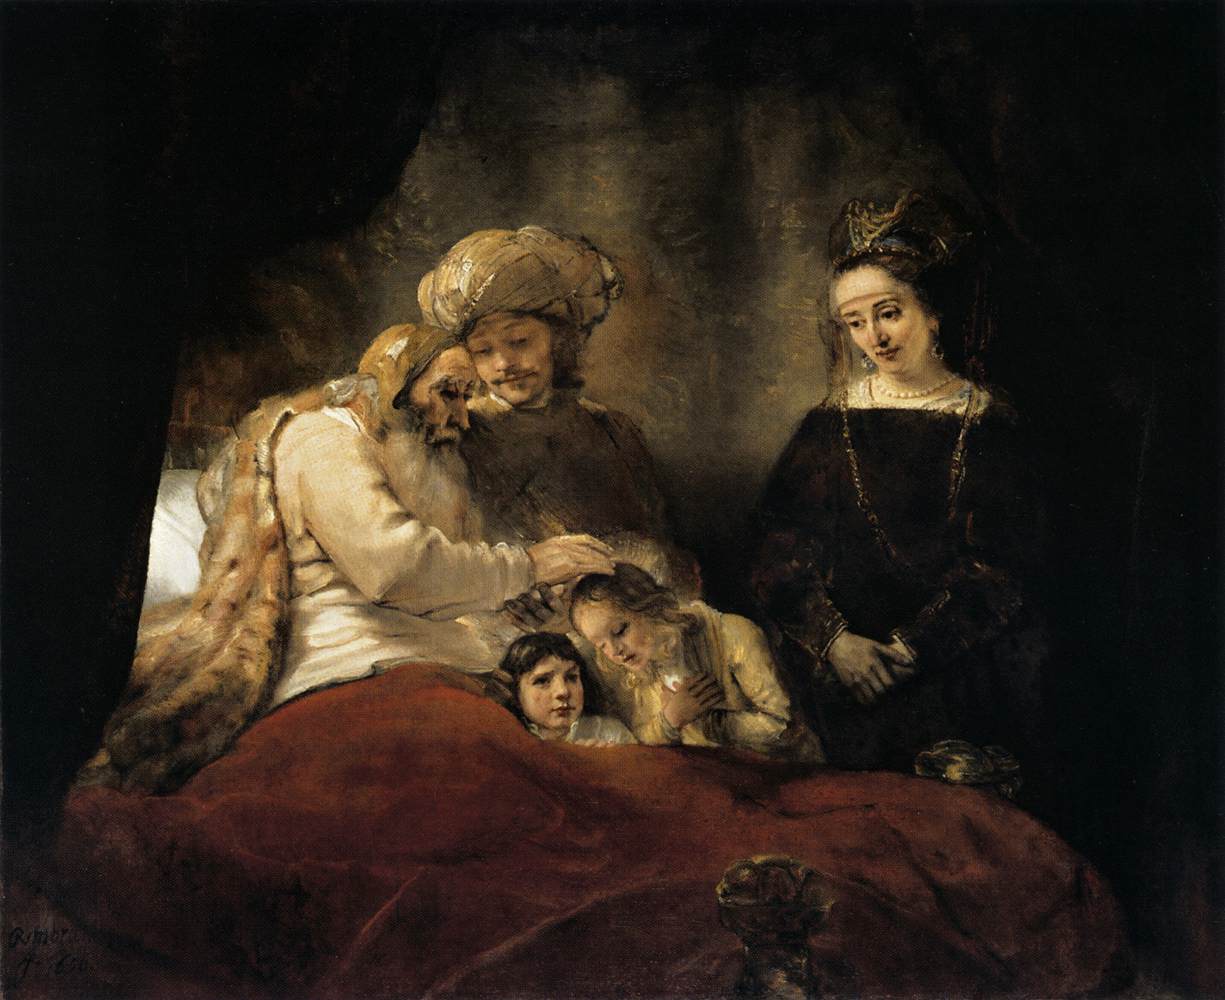 Rembrandt: Jákob megáldja József gyermekeit